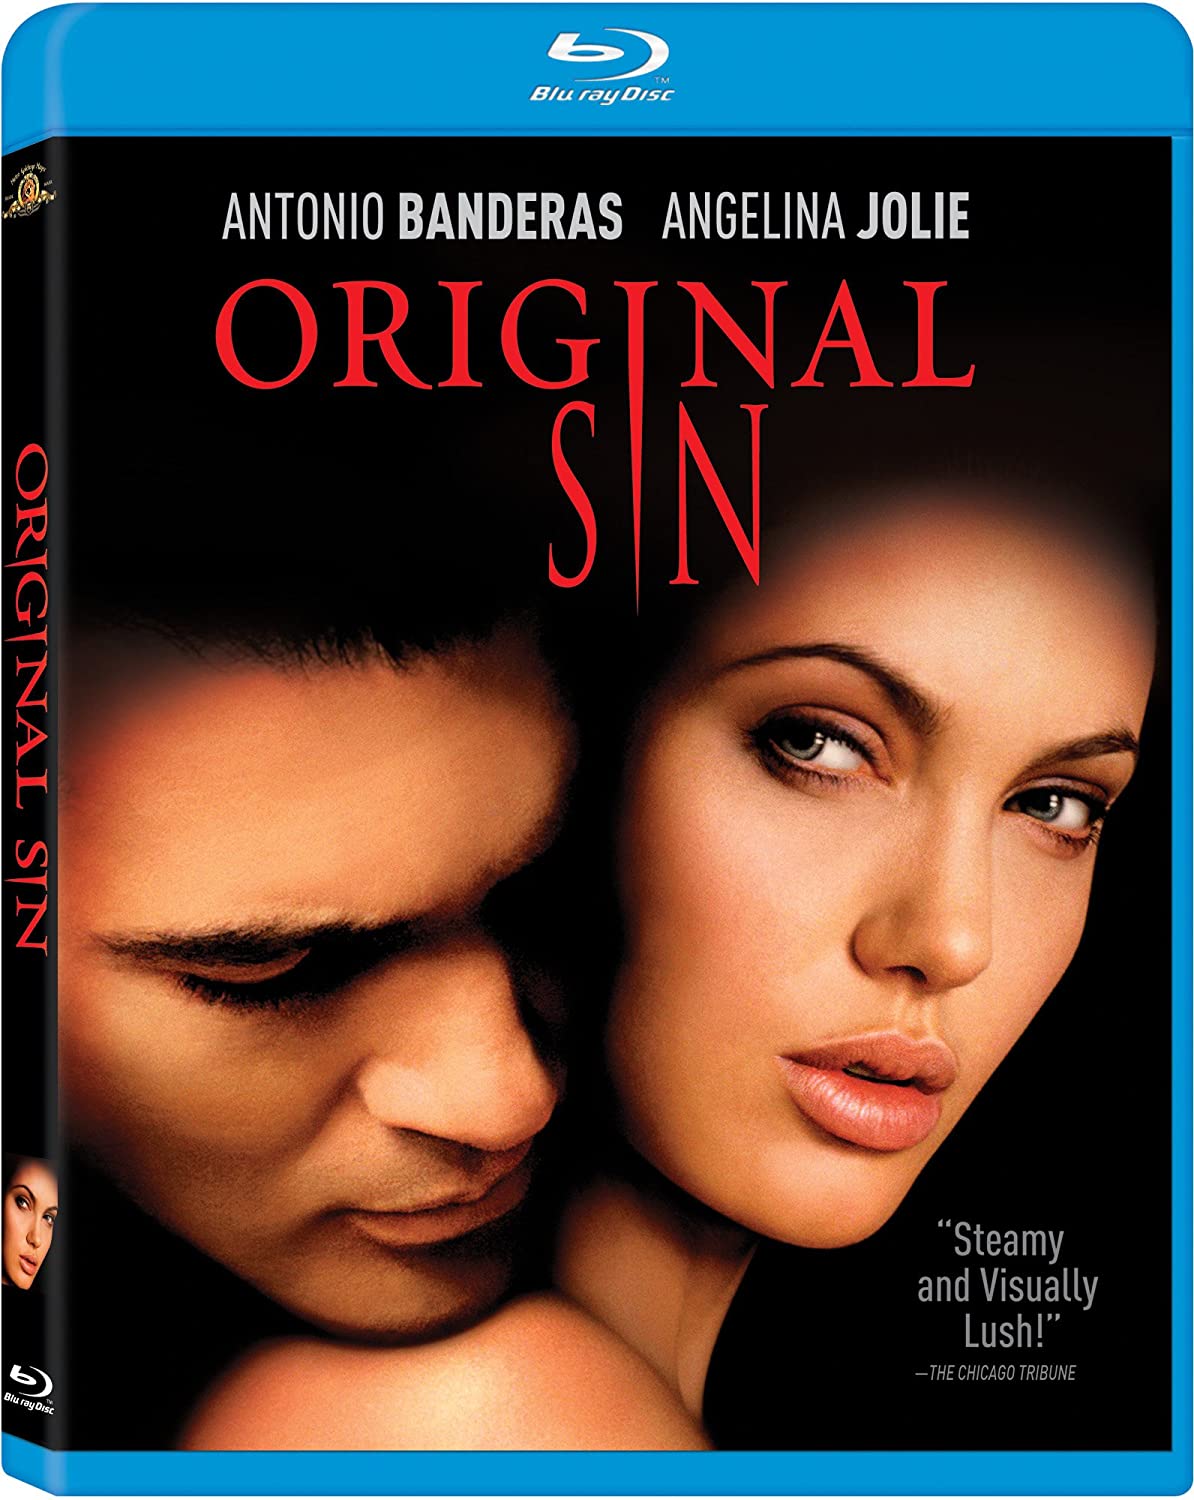 Original Sin (2001) ** Blu-ray recensie | De